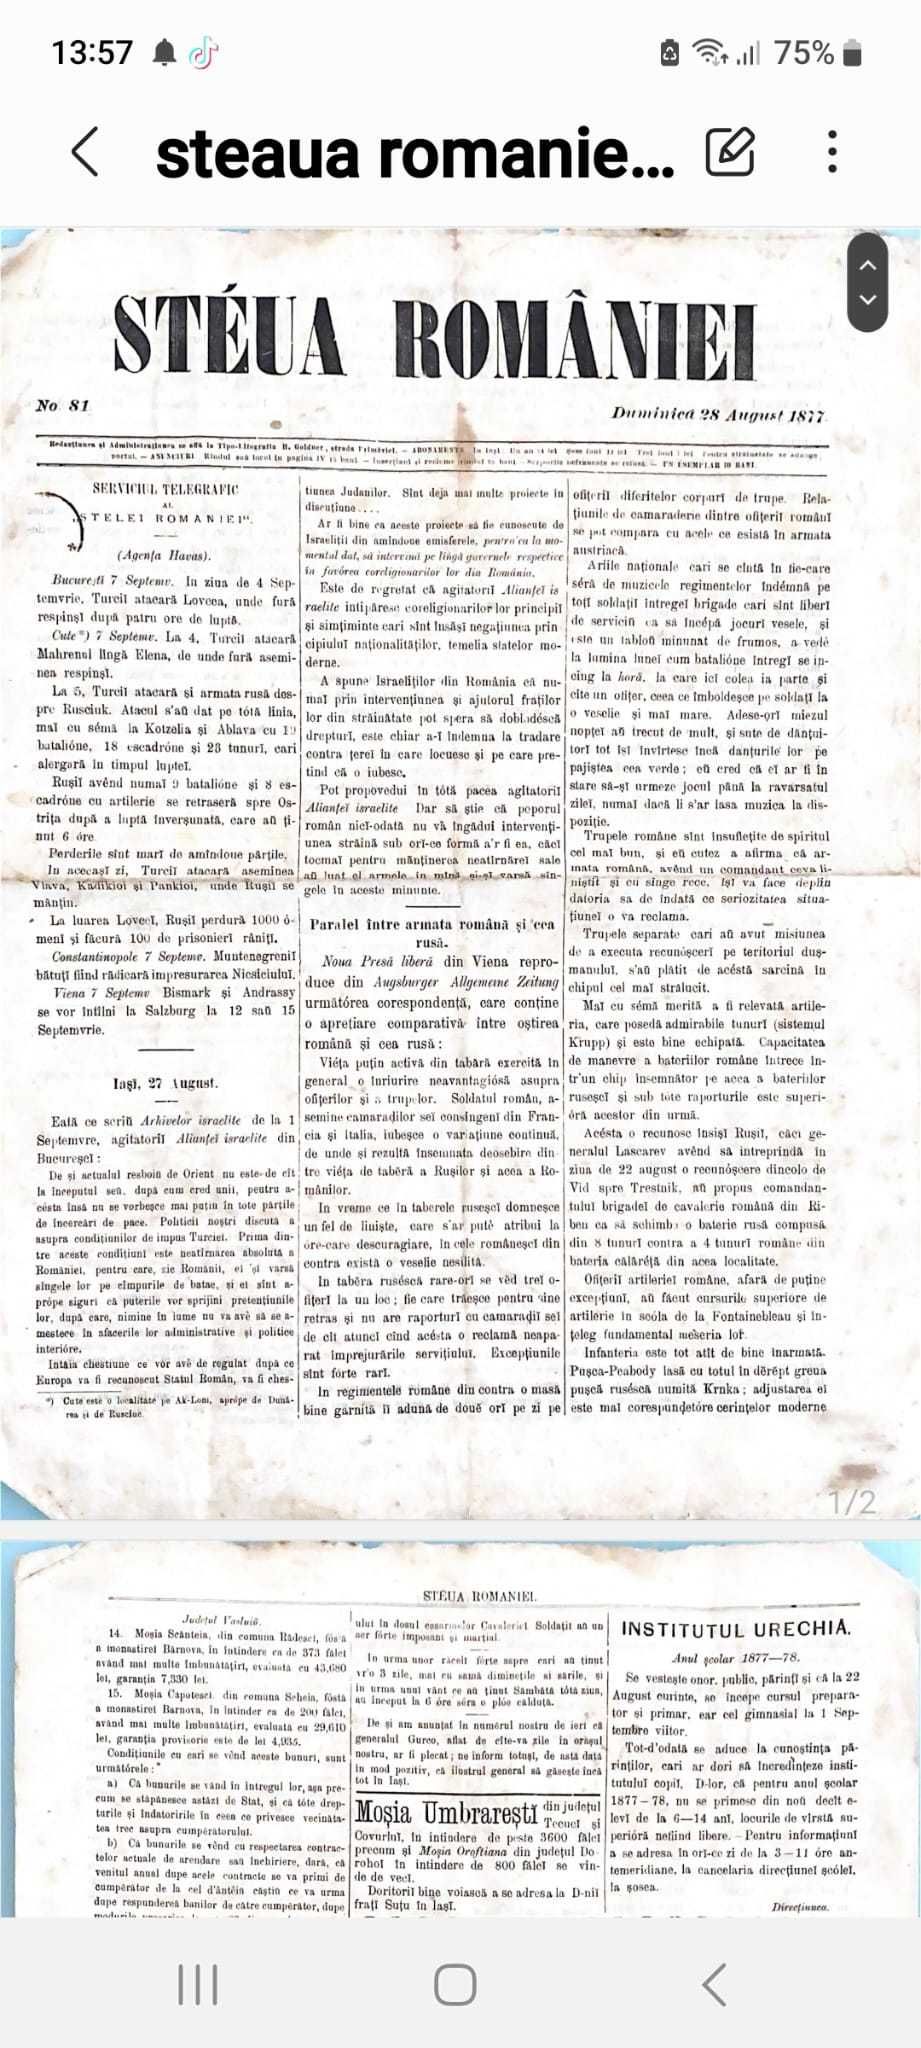 Vand ziare vechi din perioada anilor 1870-1920